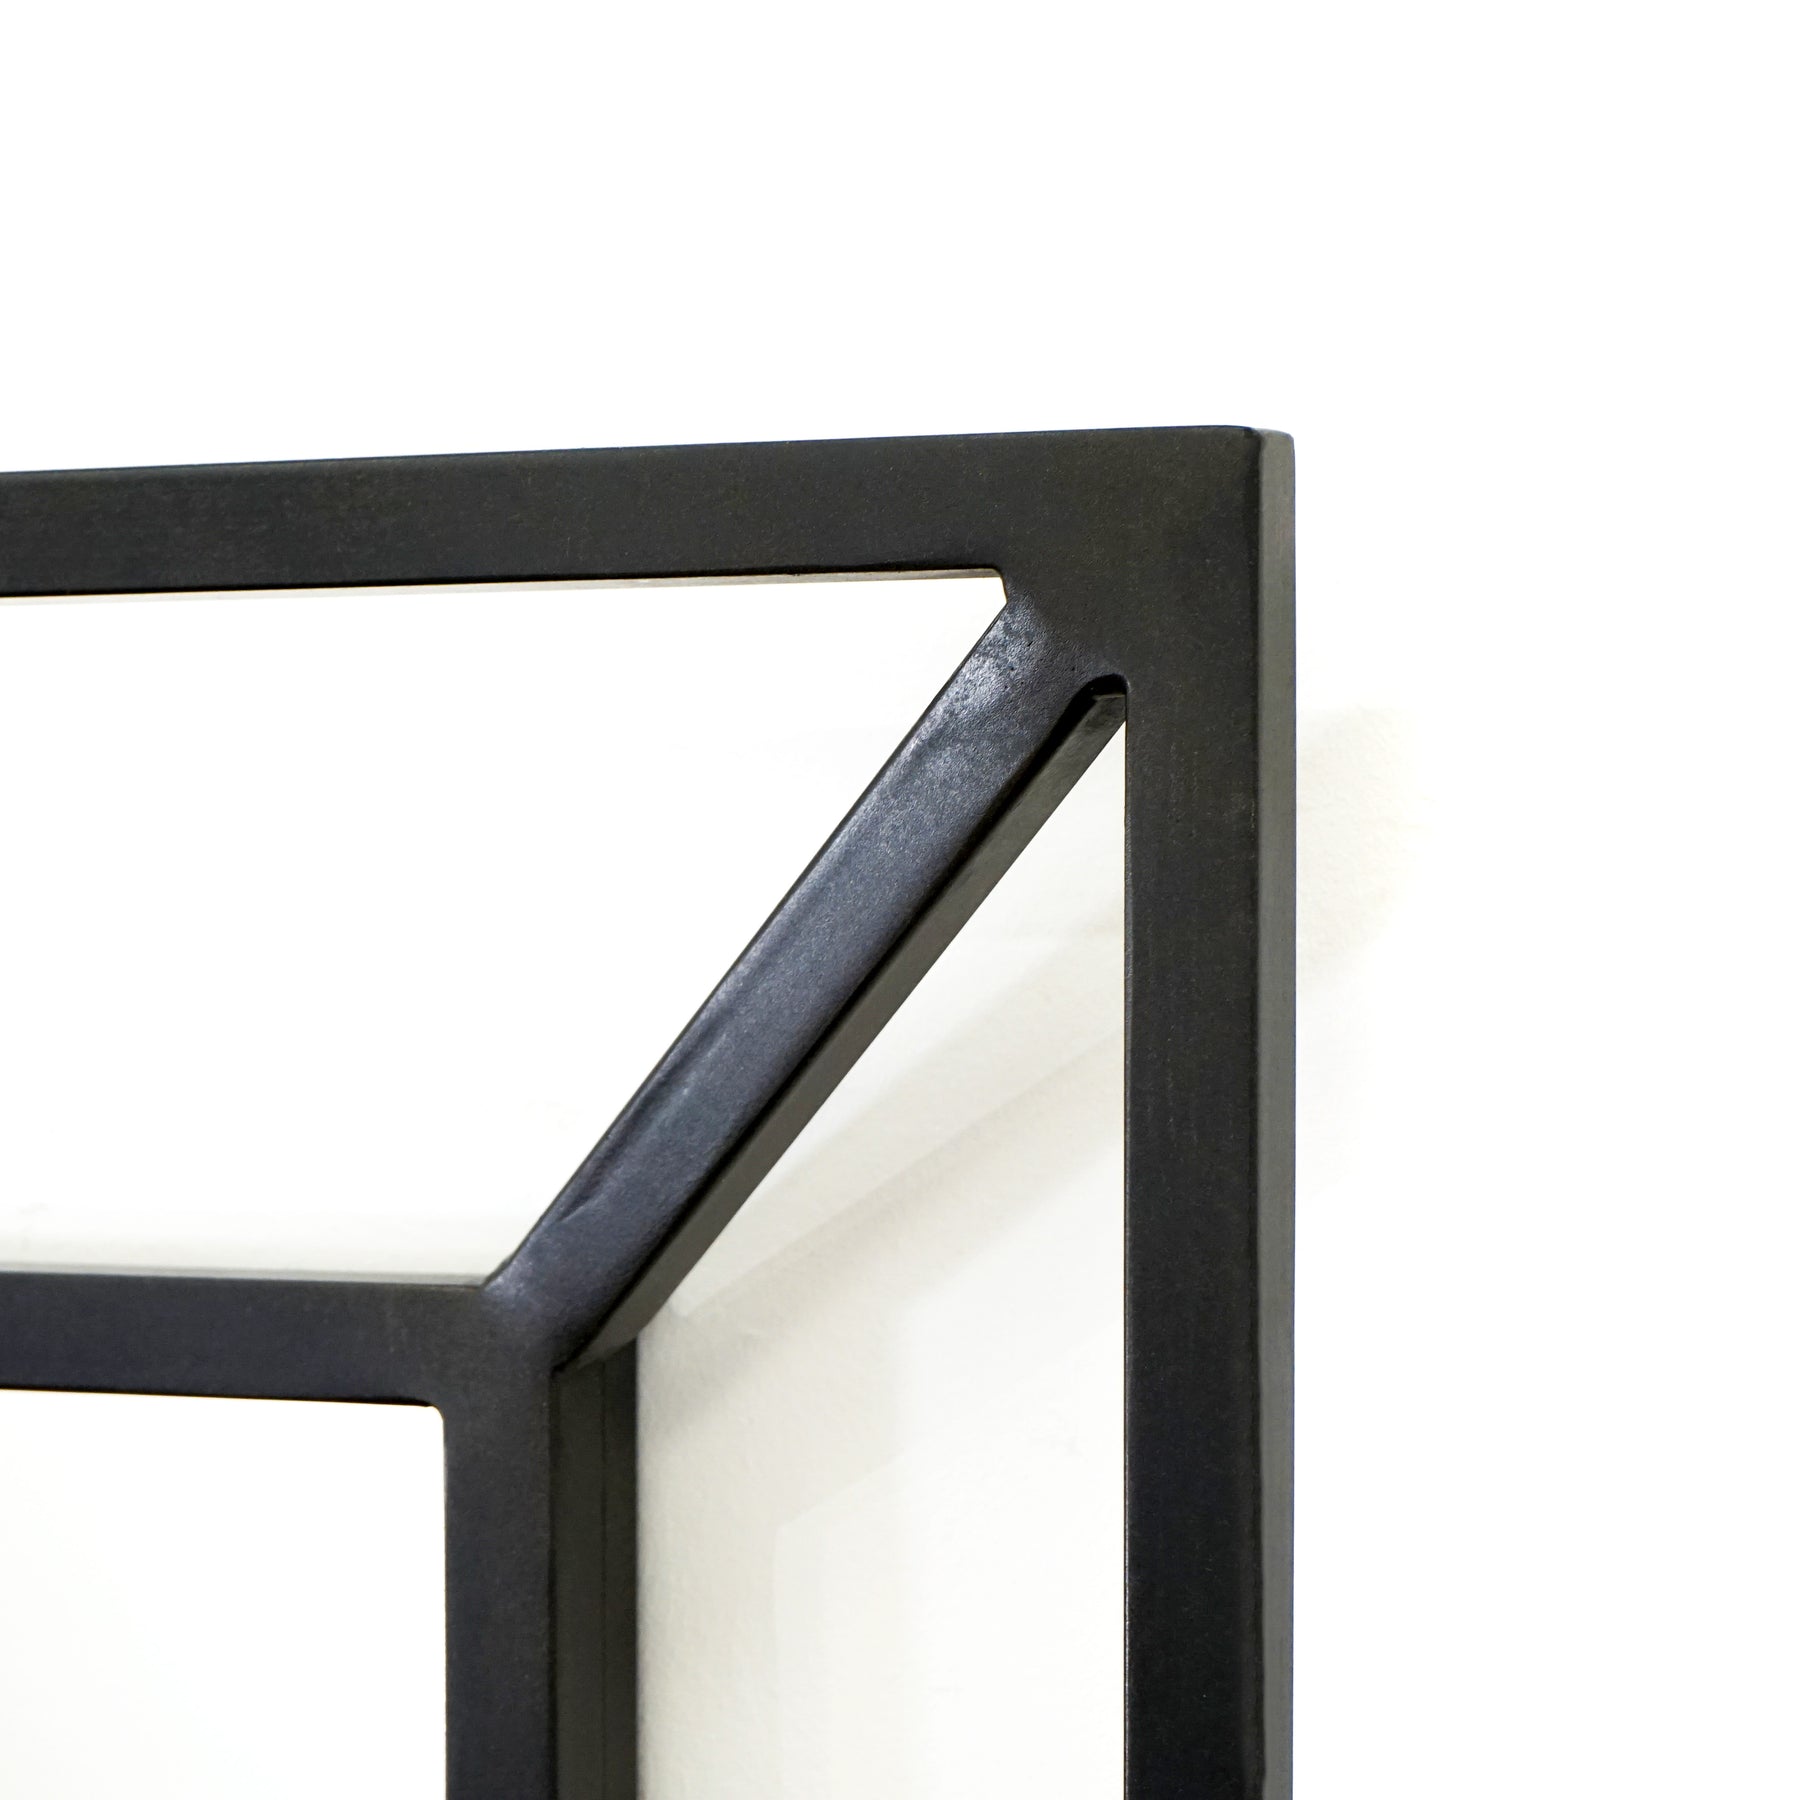 Alternate detail shot of Black Full Length Art Deco Metal Mirror frame